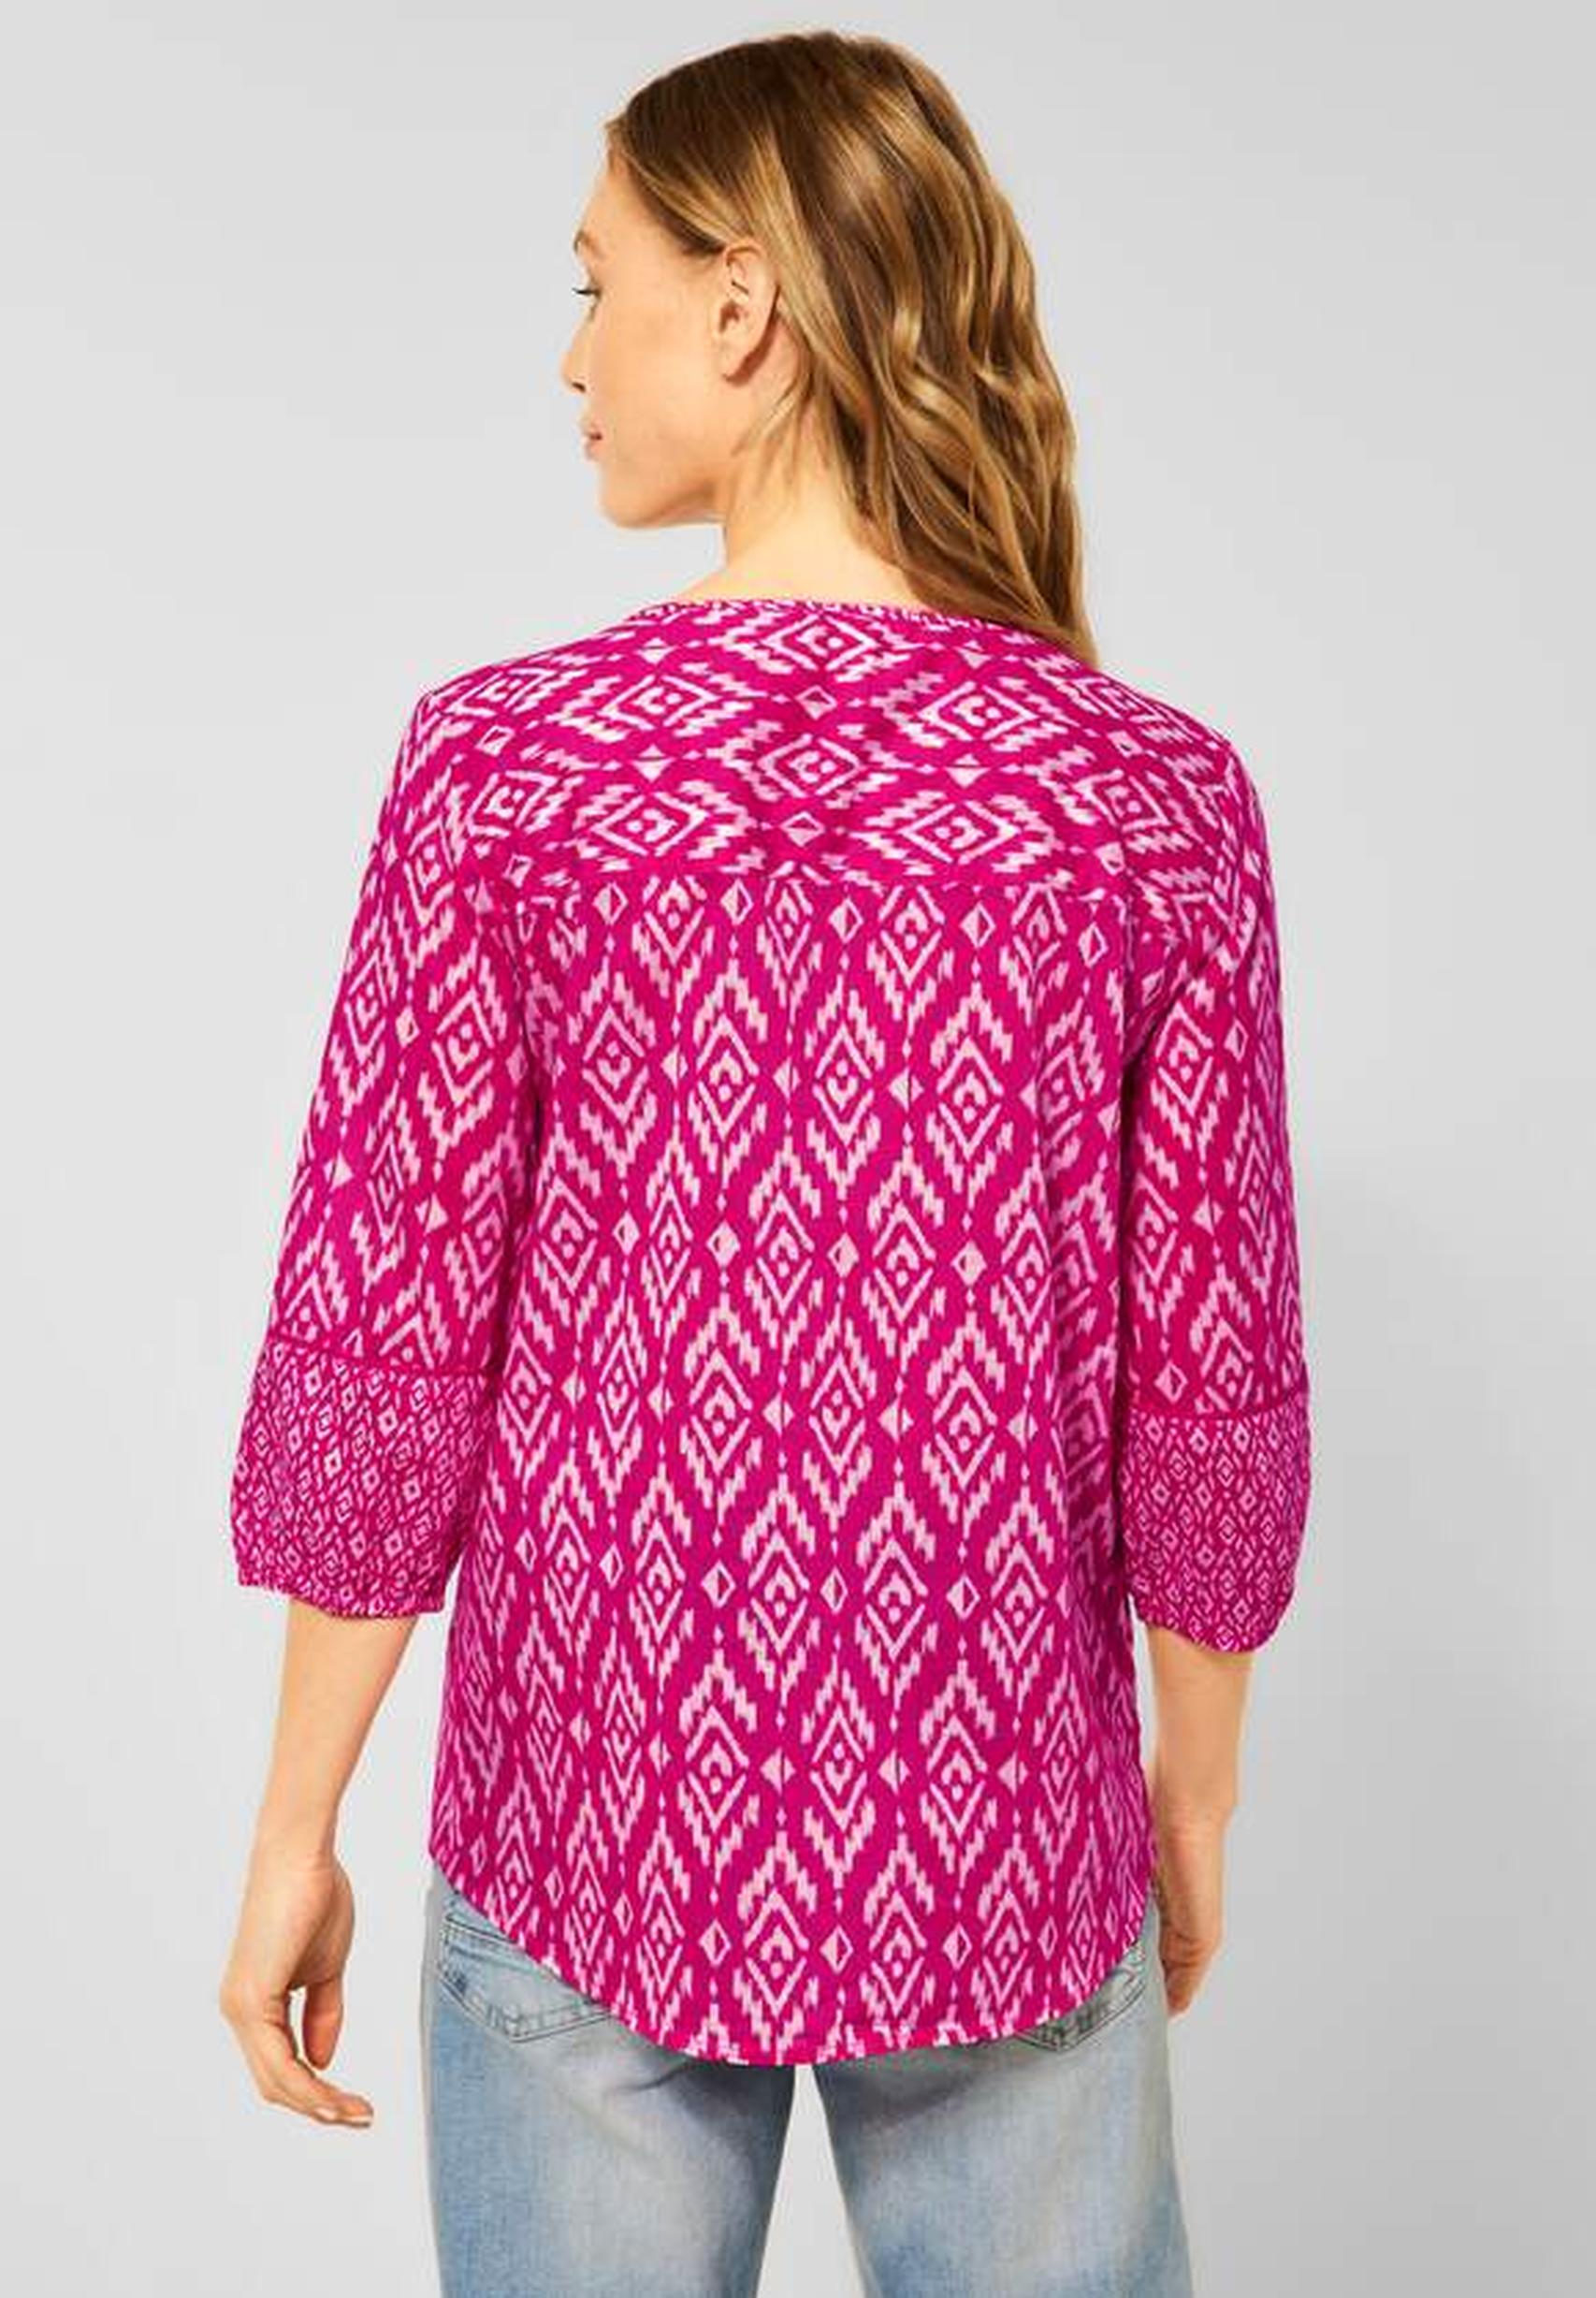 Modische Bluse aus der Kollektion in 343270 Raspberry von CECIL Pink